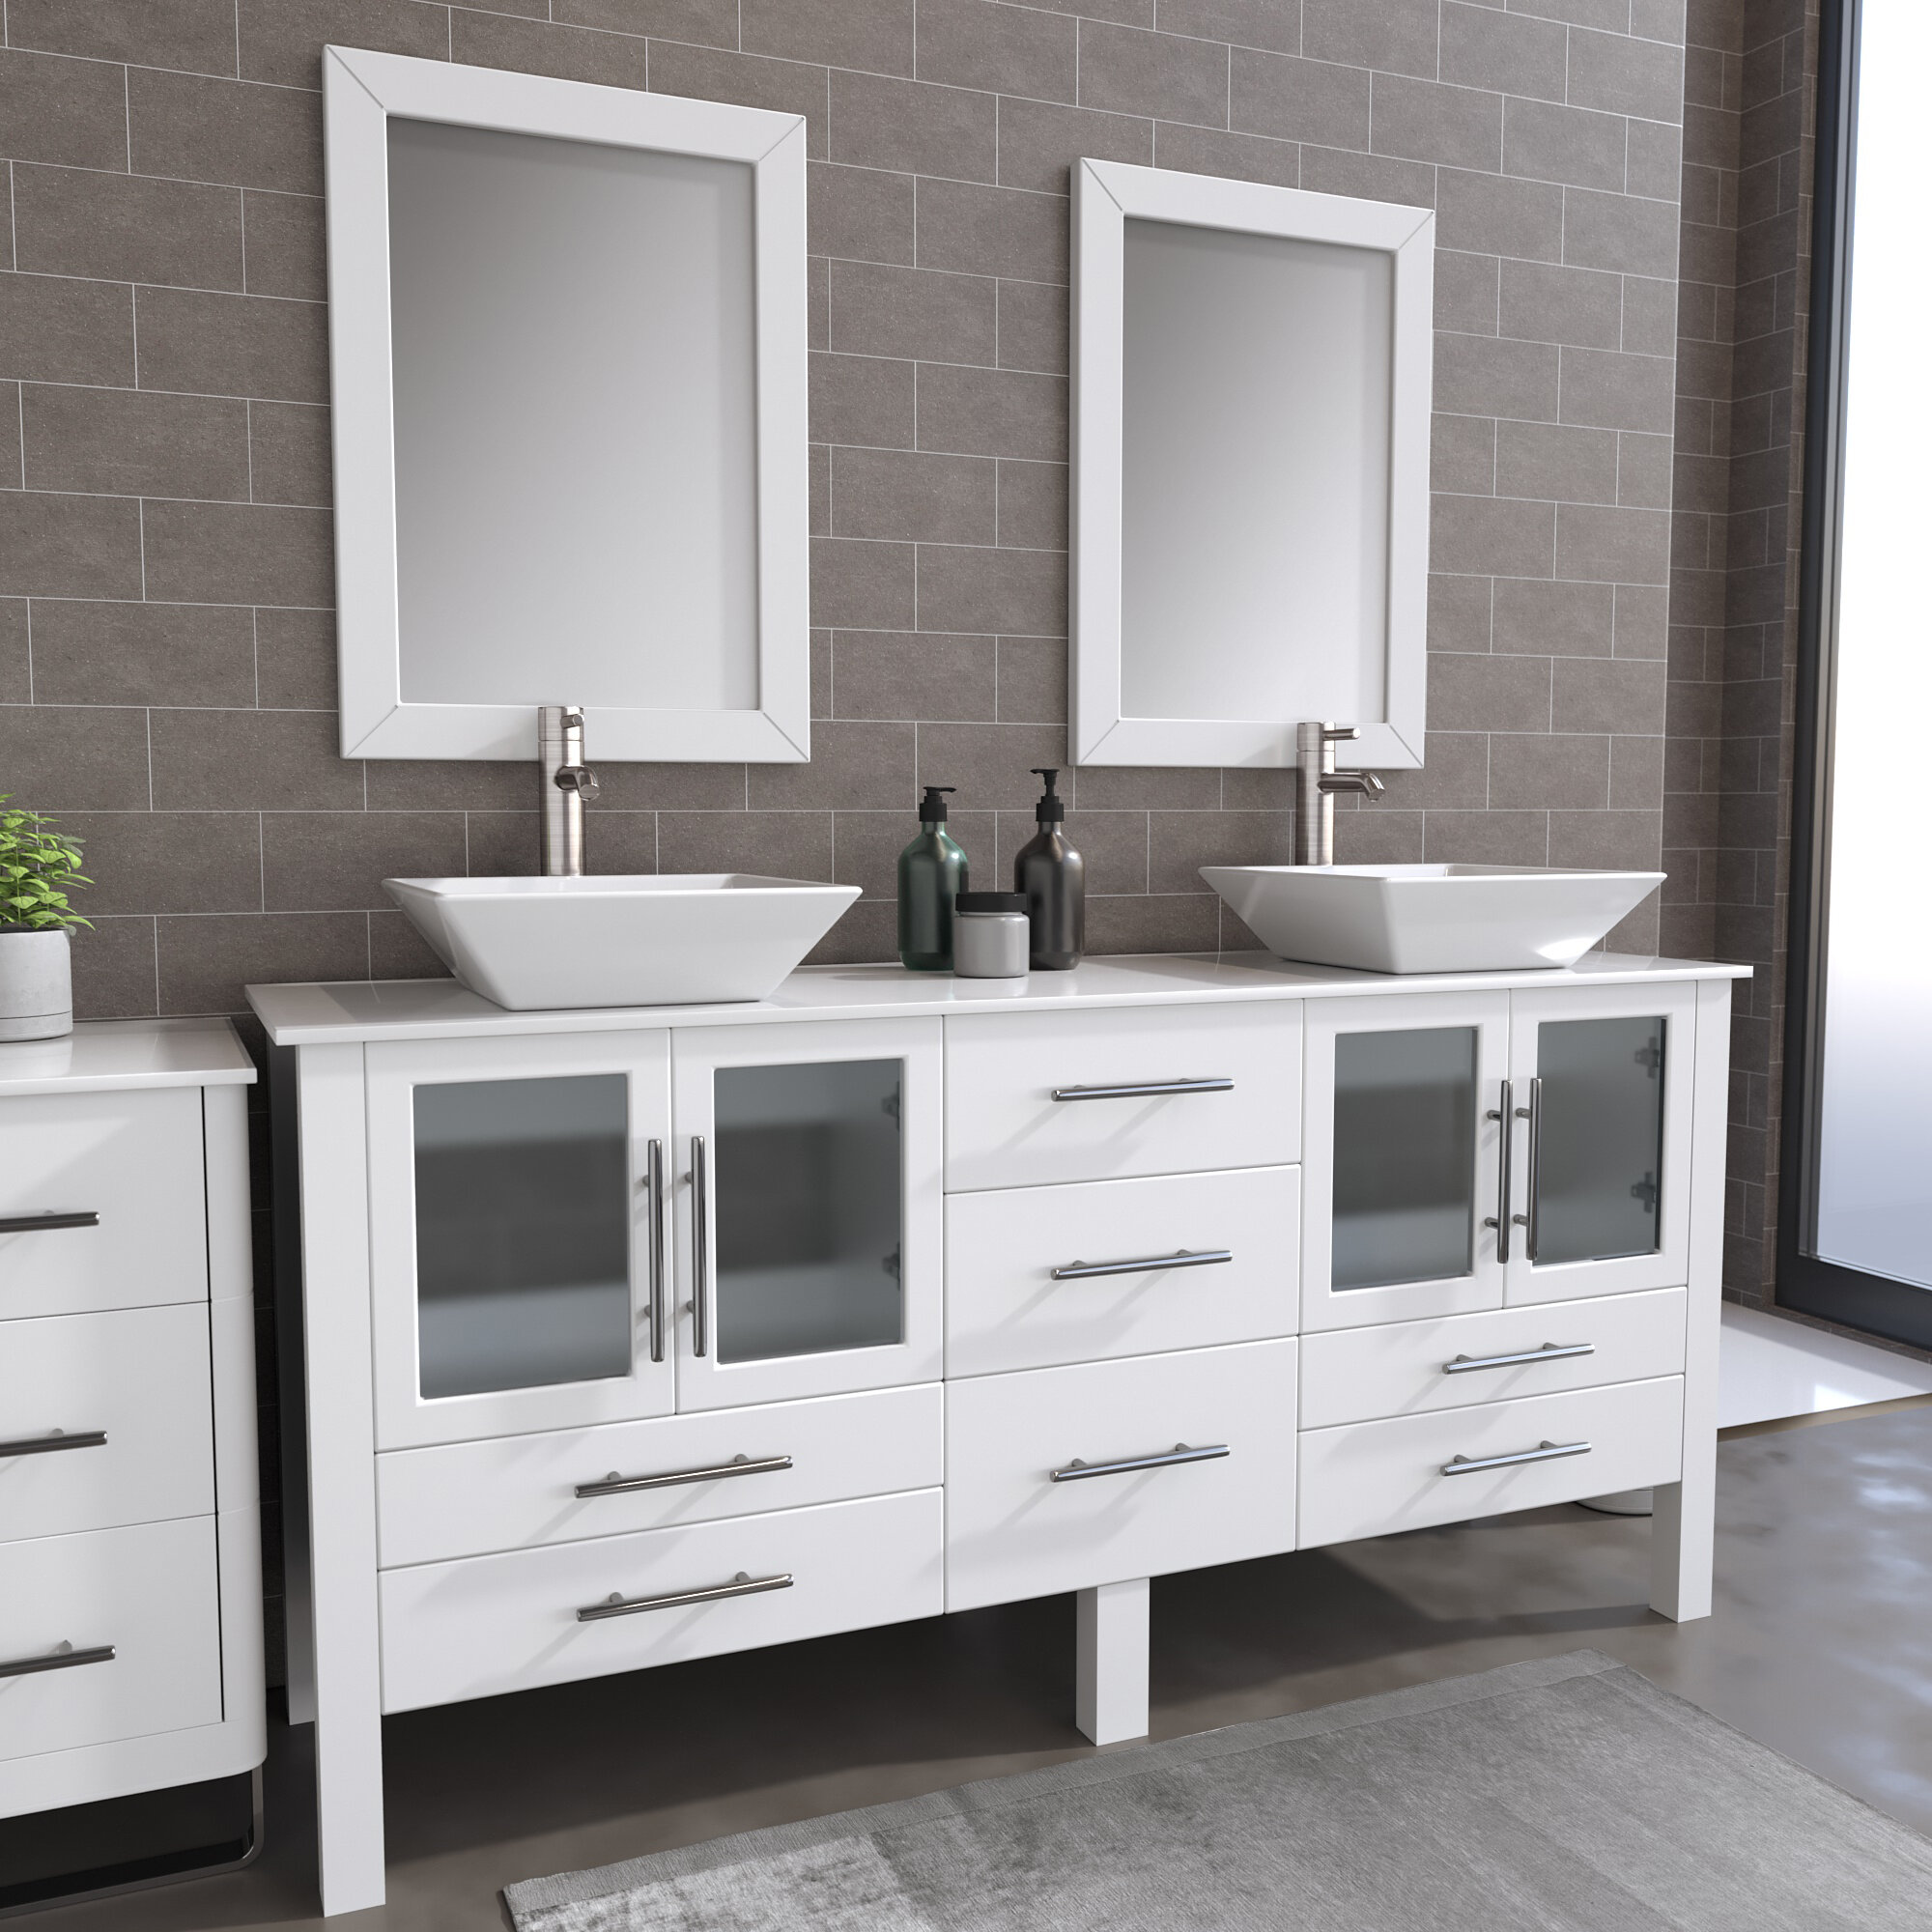 Ebern Designs Flory 72 Double Bathroom Vanity Reviews Wayfair